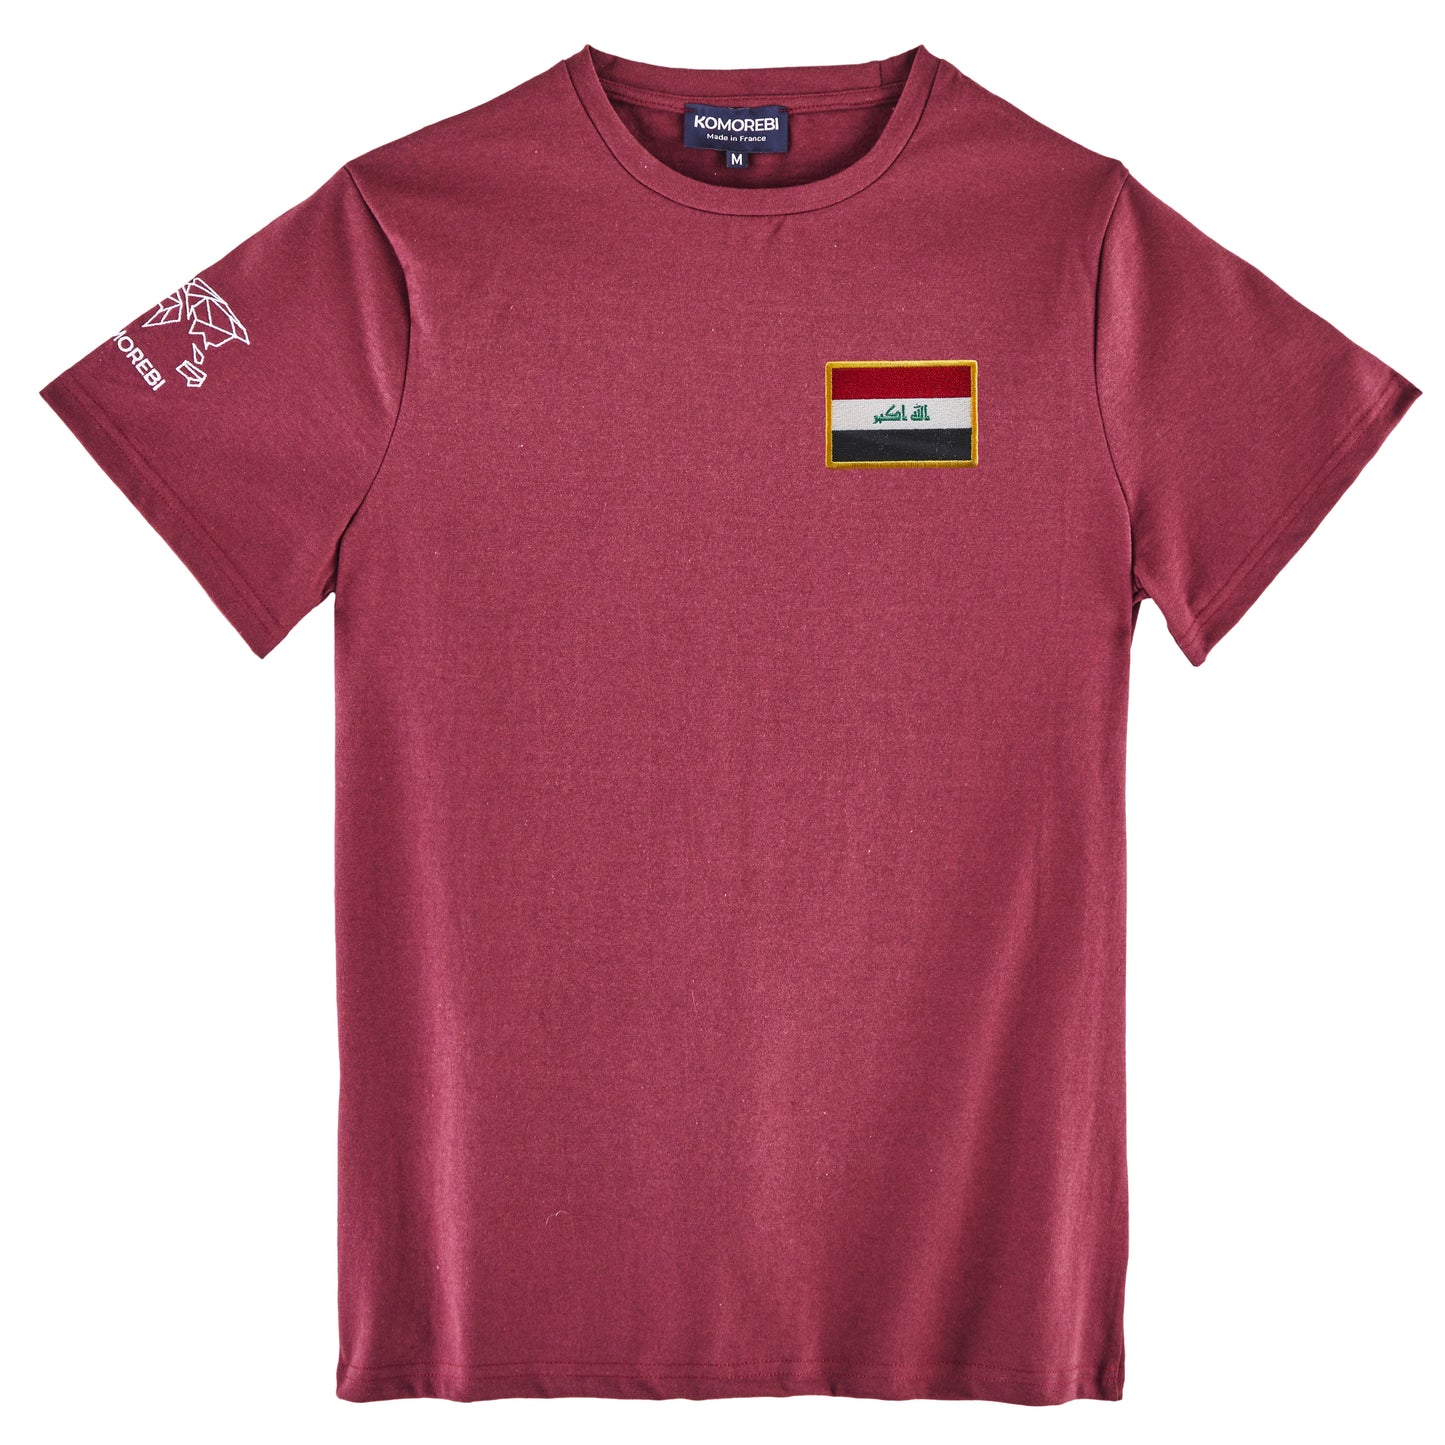 Iraq • T-shirt